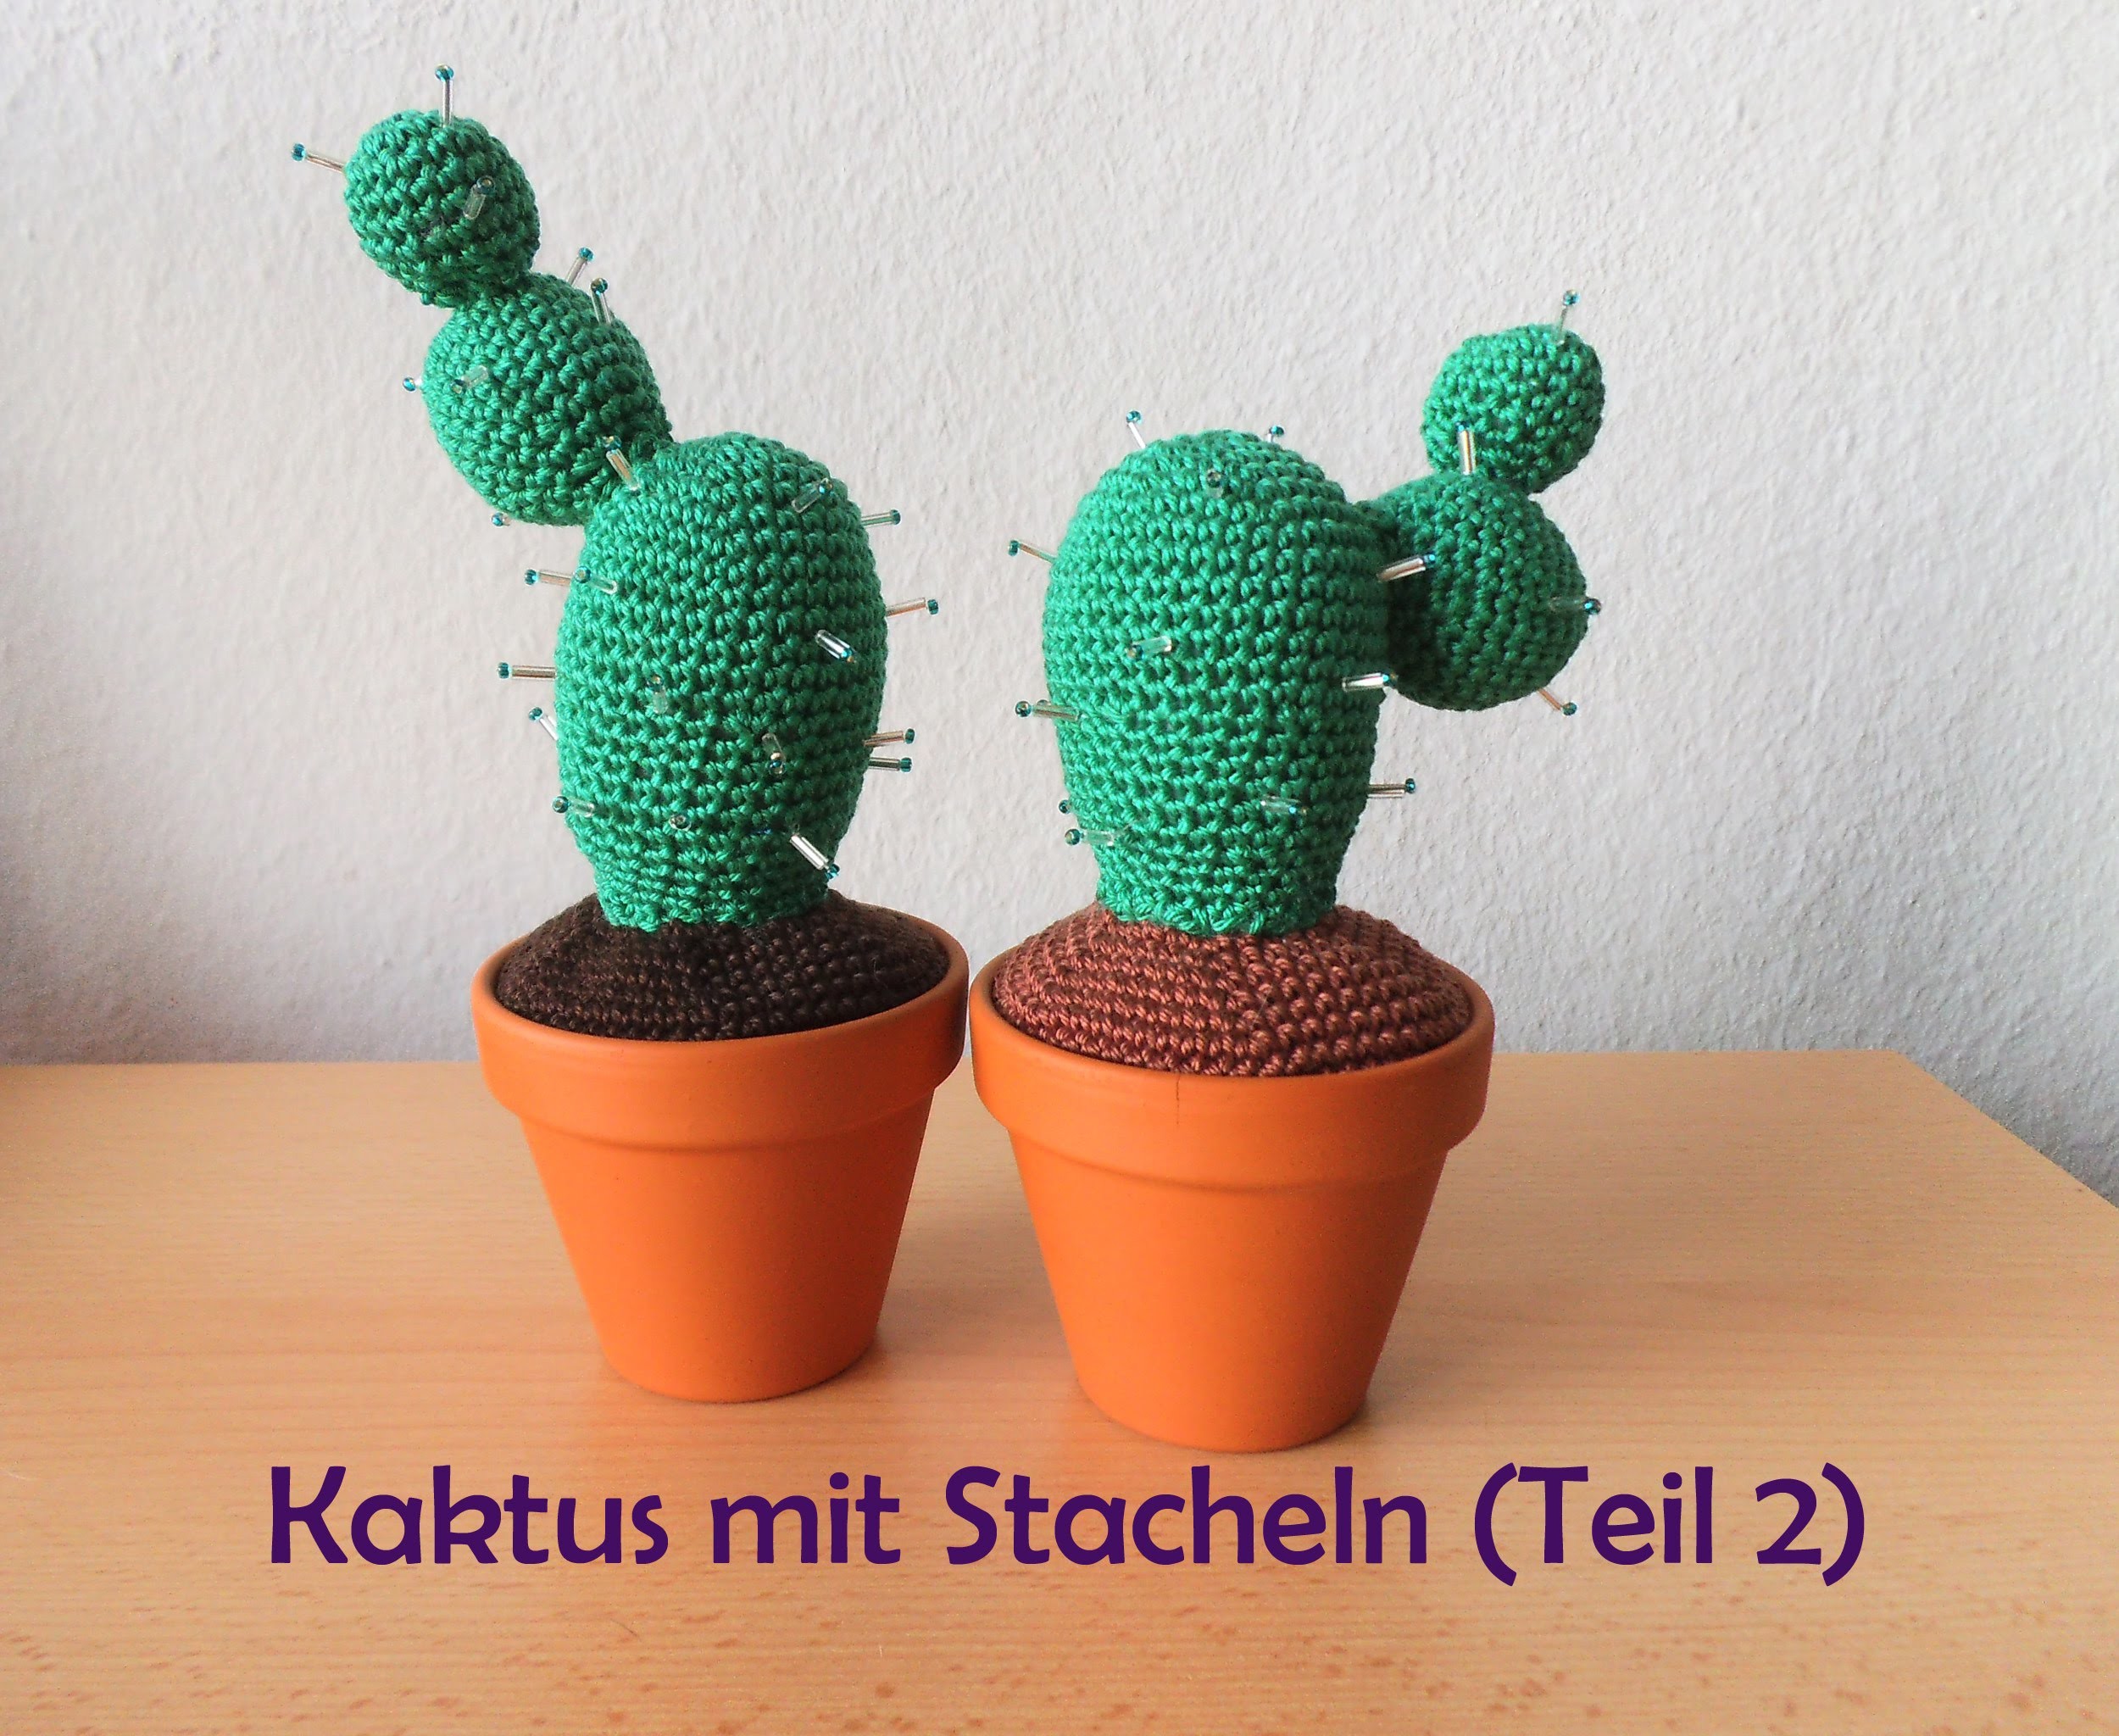 Kaktus mit Stacheln - Teil 2 - Häkelanleitung